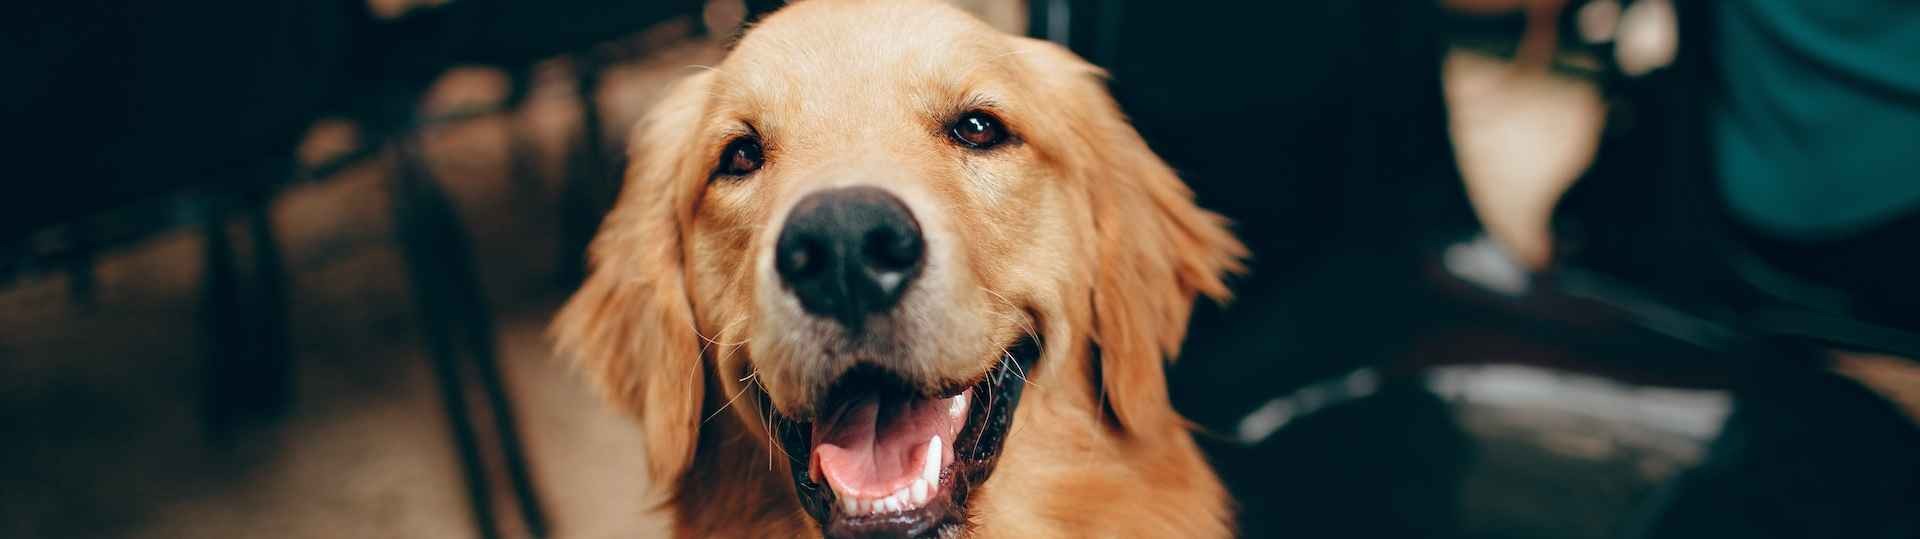 Alertan de riesgo epidemiológico alto de rabia por la escasa vacunación canina